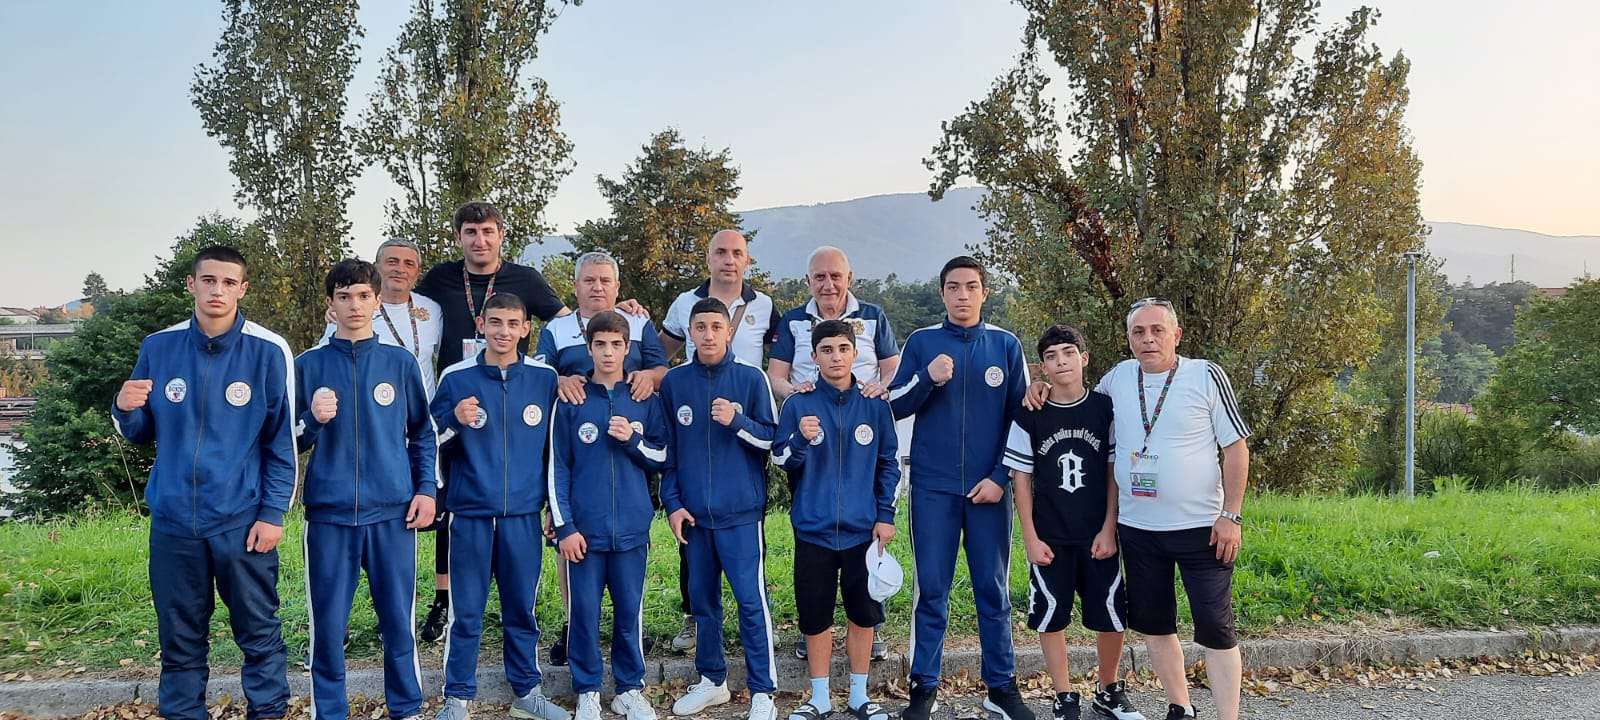 Ermeni boksörler Üst Minikler Avrupa Boks Şampiyonası'nda 13 madalya ile rekor kırdı